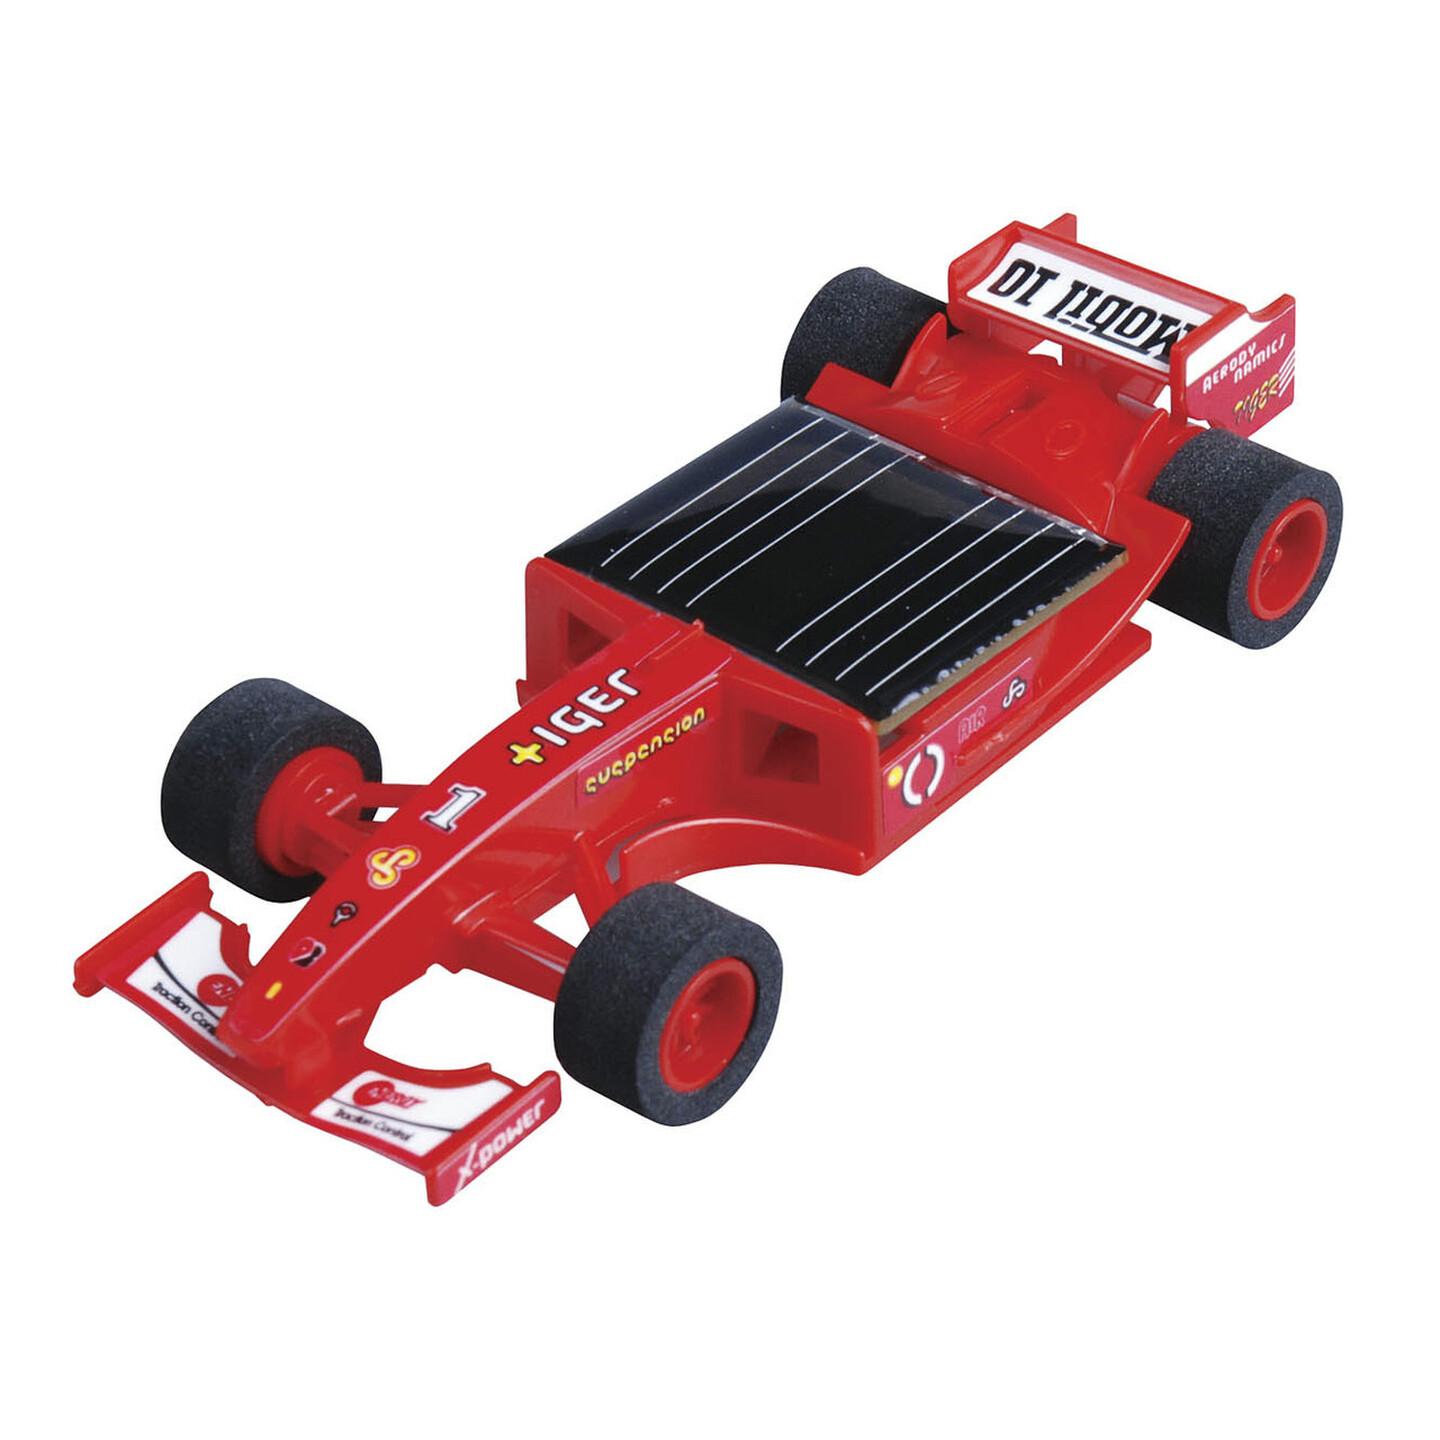 Solar Formula 1 Car Kit